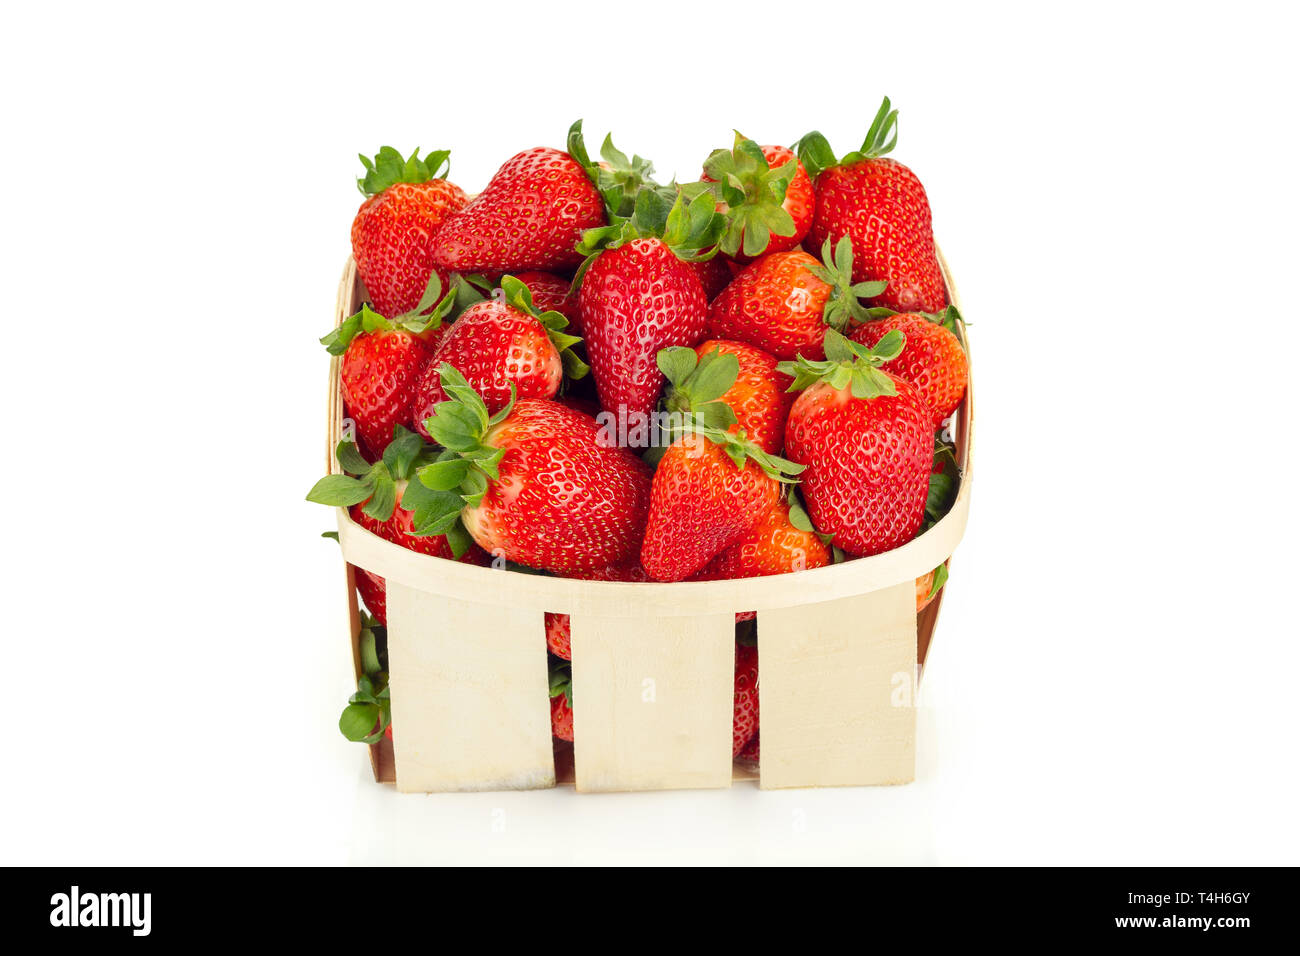 Holz- Korb mit frischen Erdbeeren auf einem weißen Hintergrund. Fragaria ananassa Stockfoto